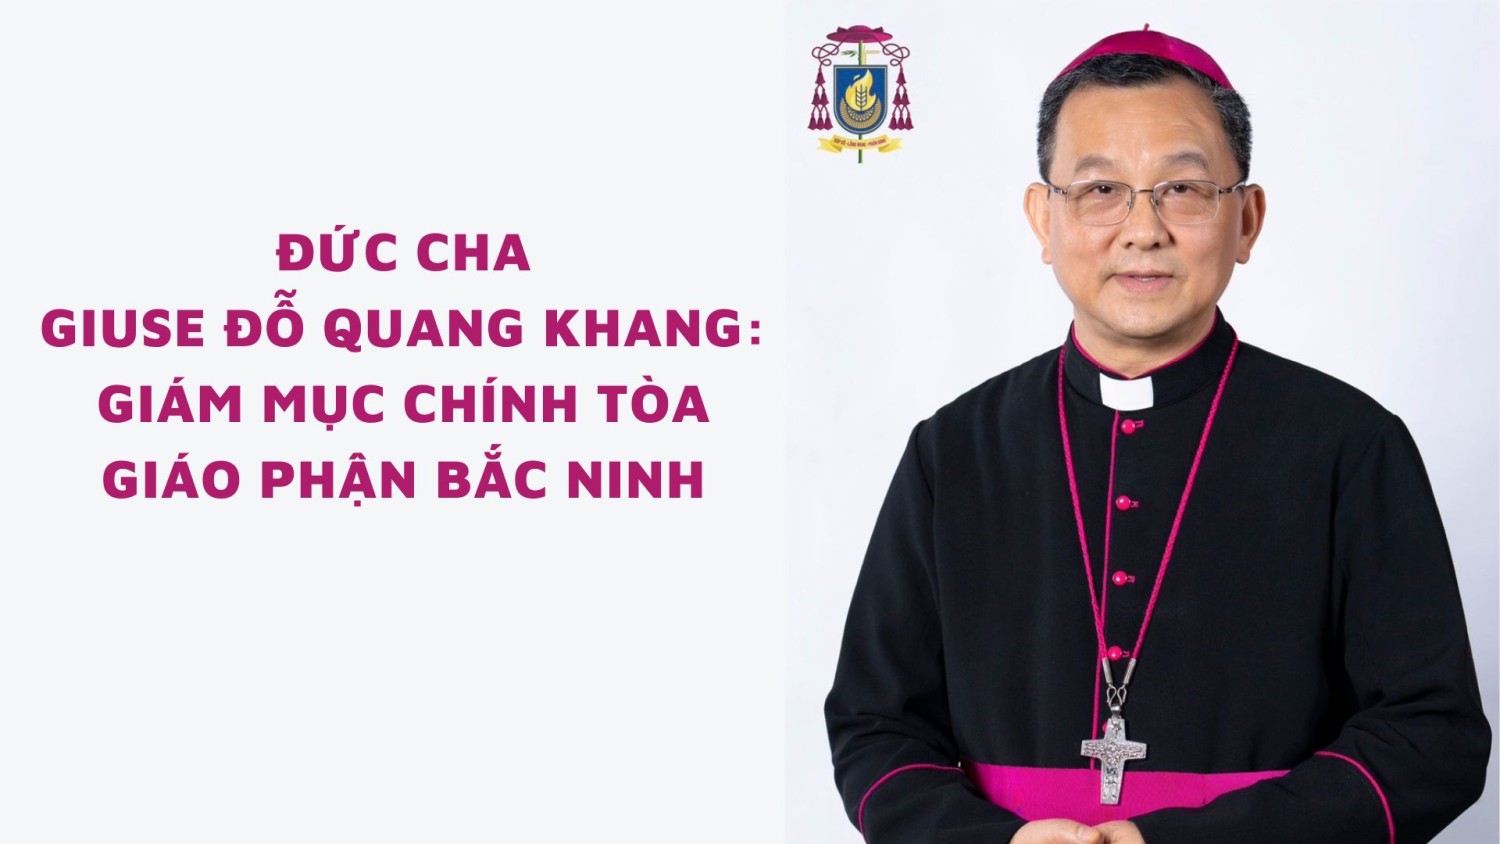 Giám mục Chính tòa giáo phận Bắc Ninh